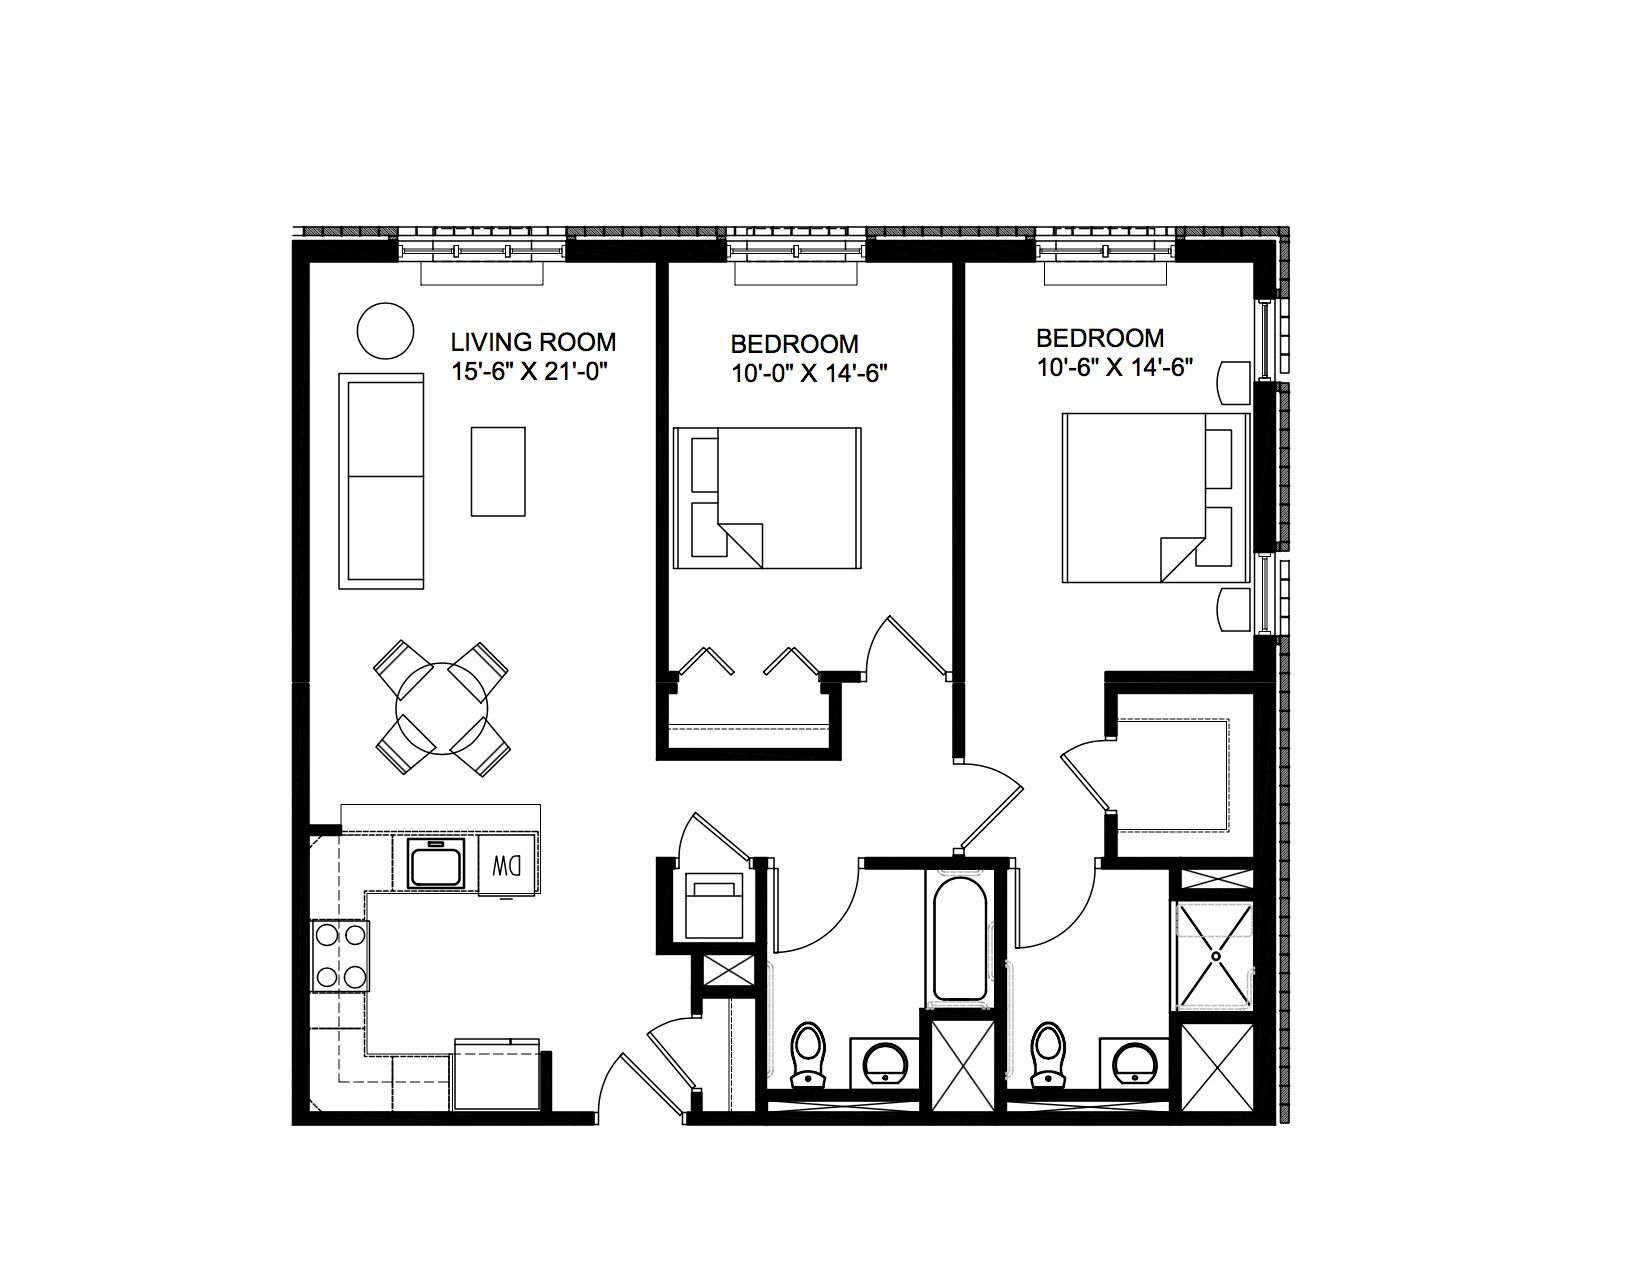 Two bedroom floorplan 1